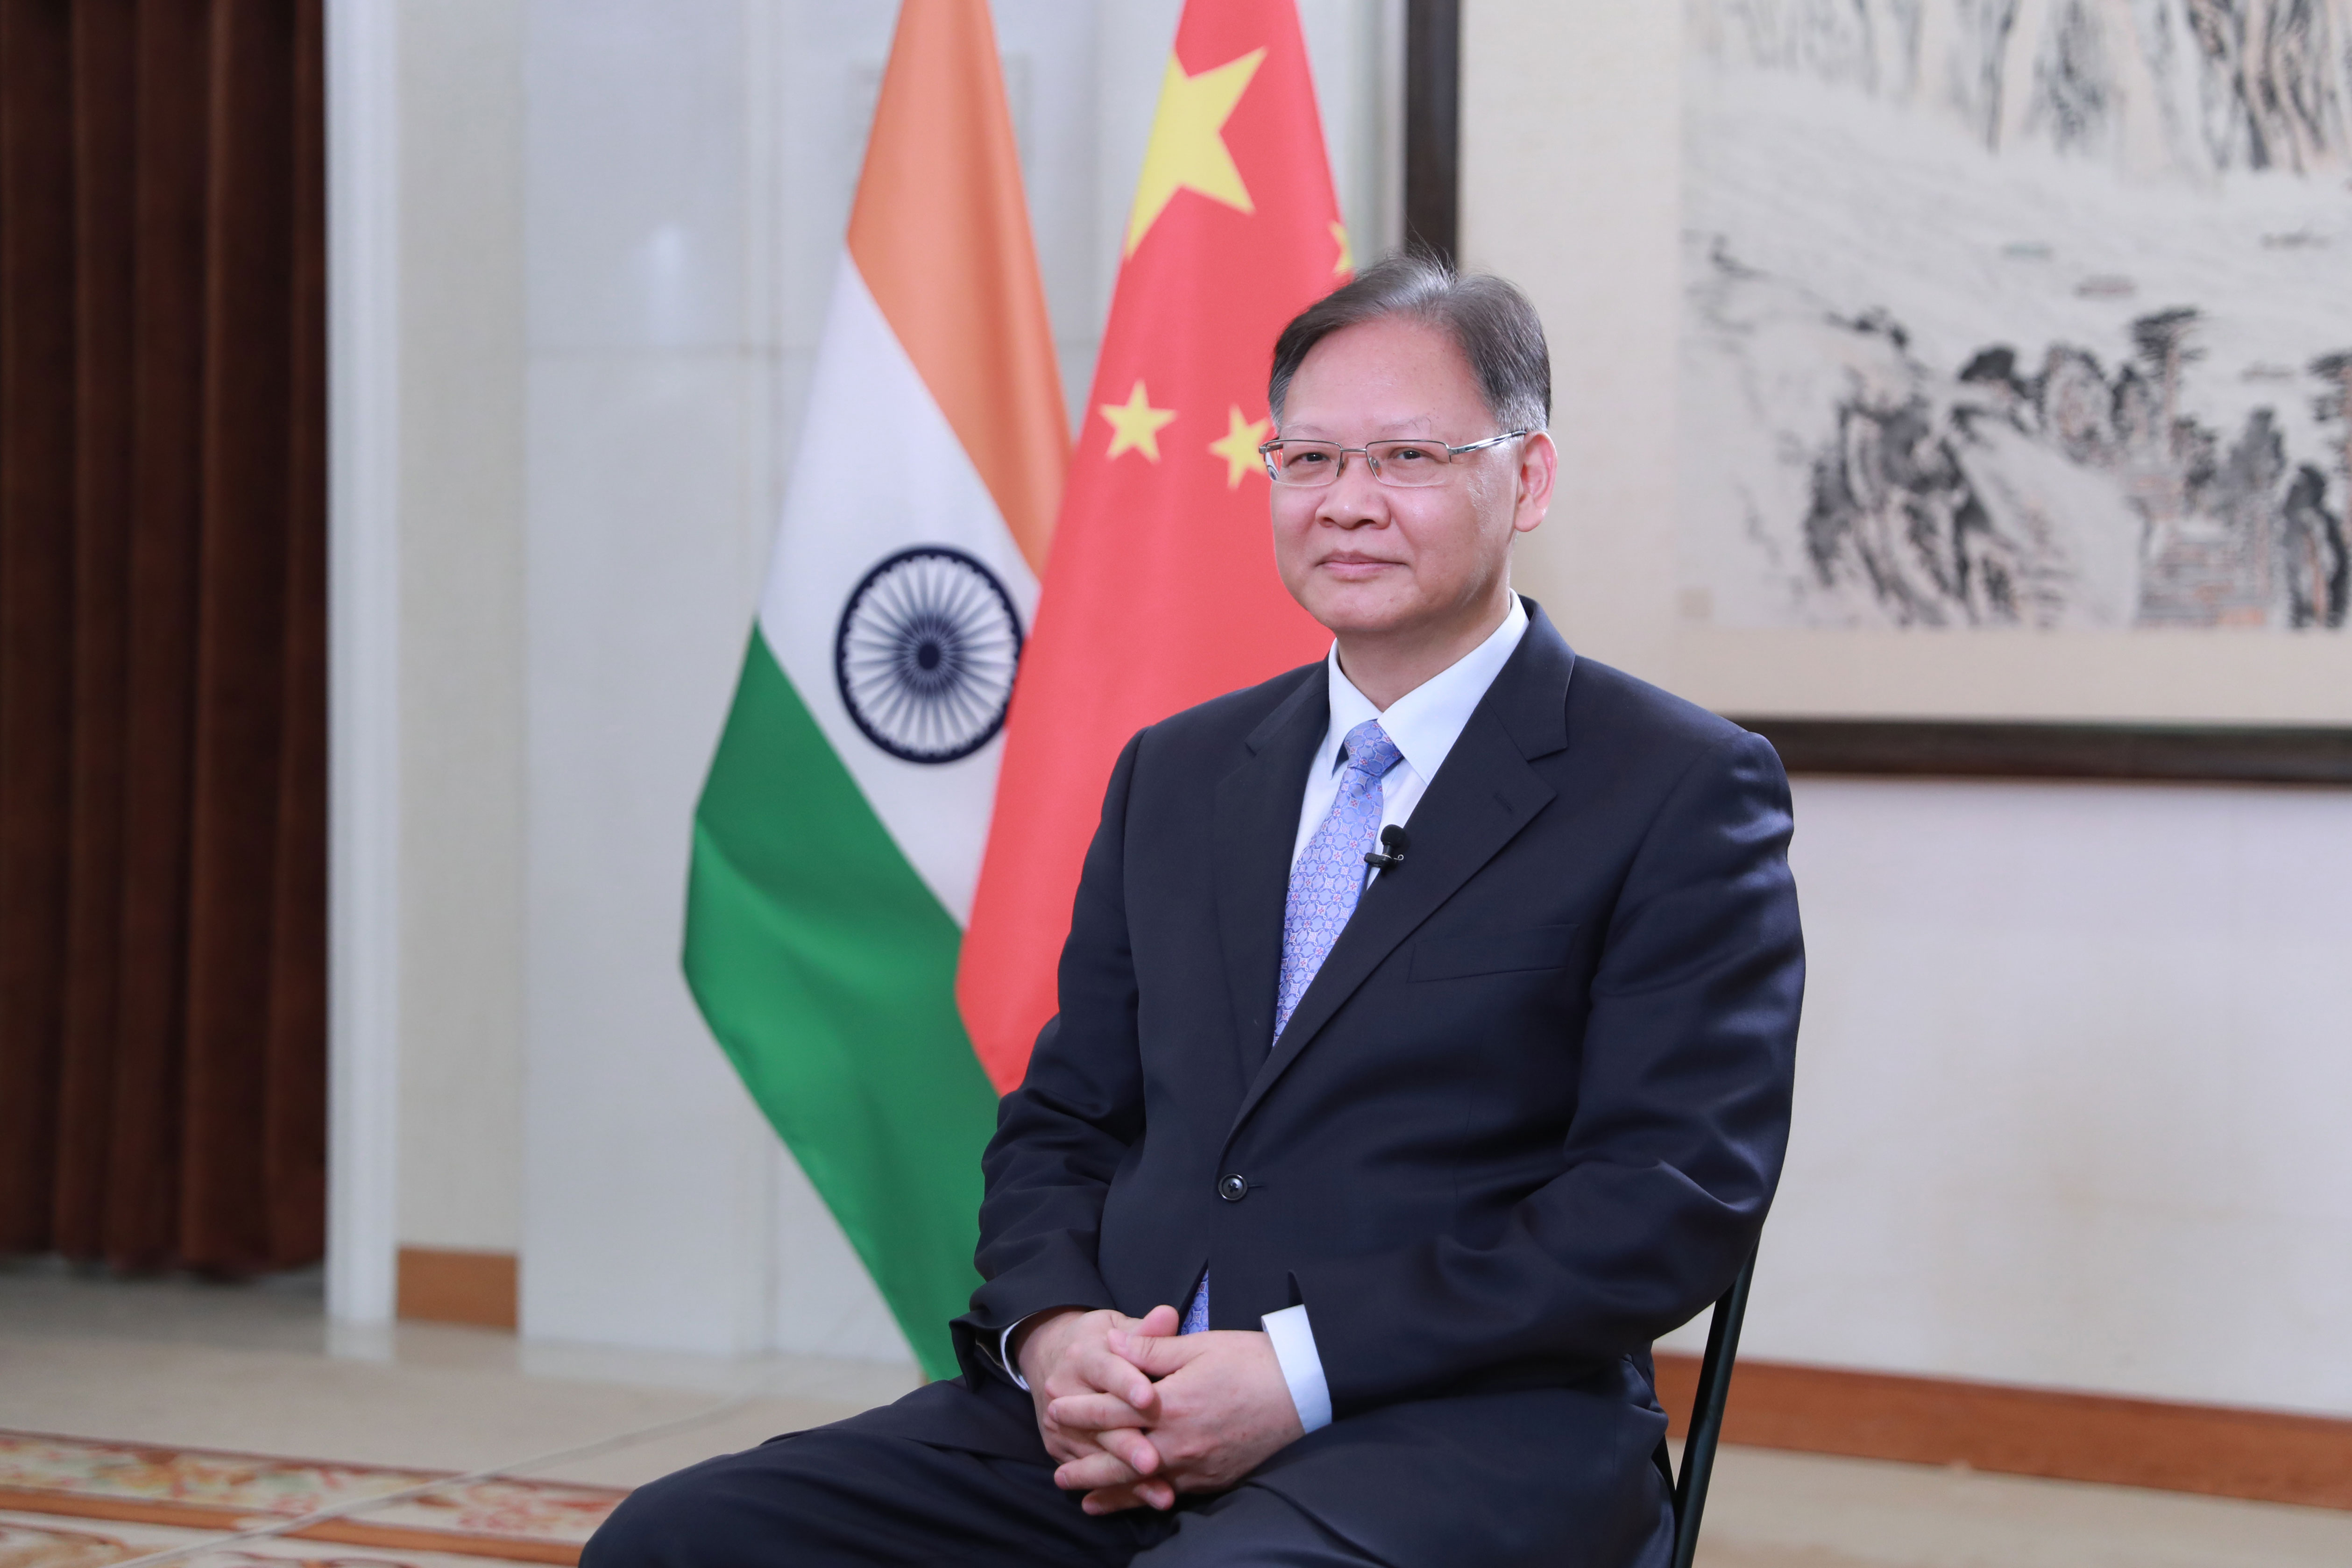 前夕接受中国国际电视台(cgtn)和印度报业托拉斯(pti)记者联合采访